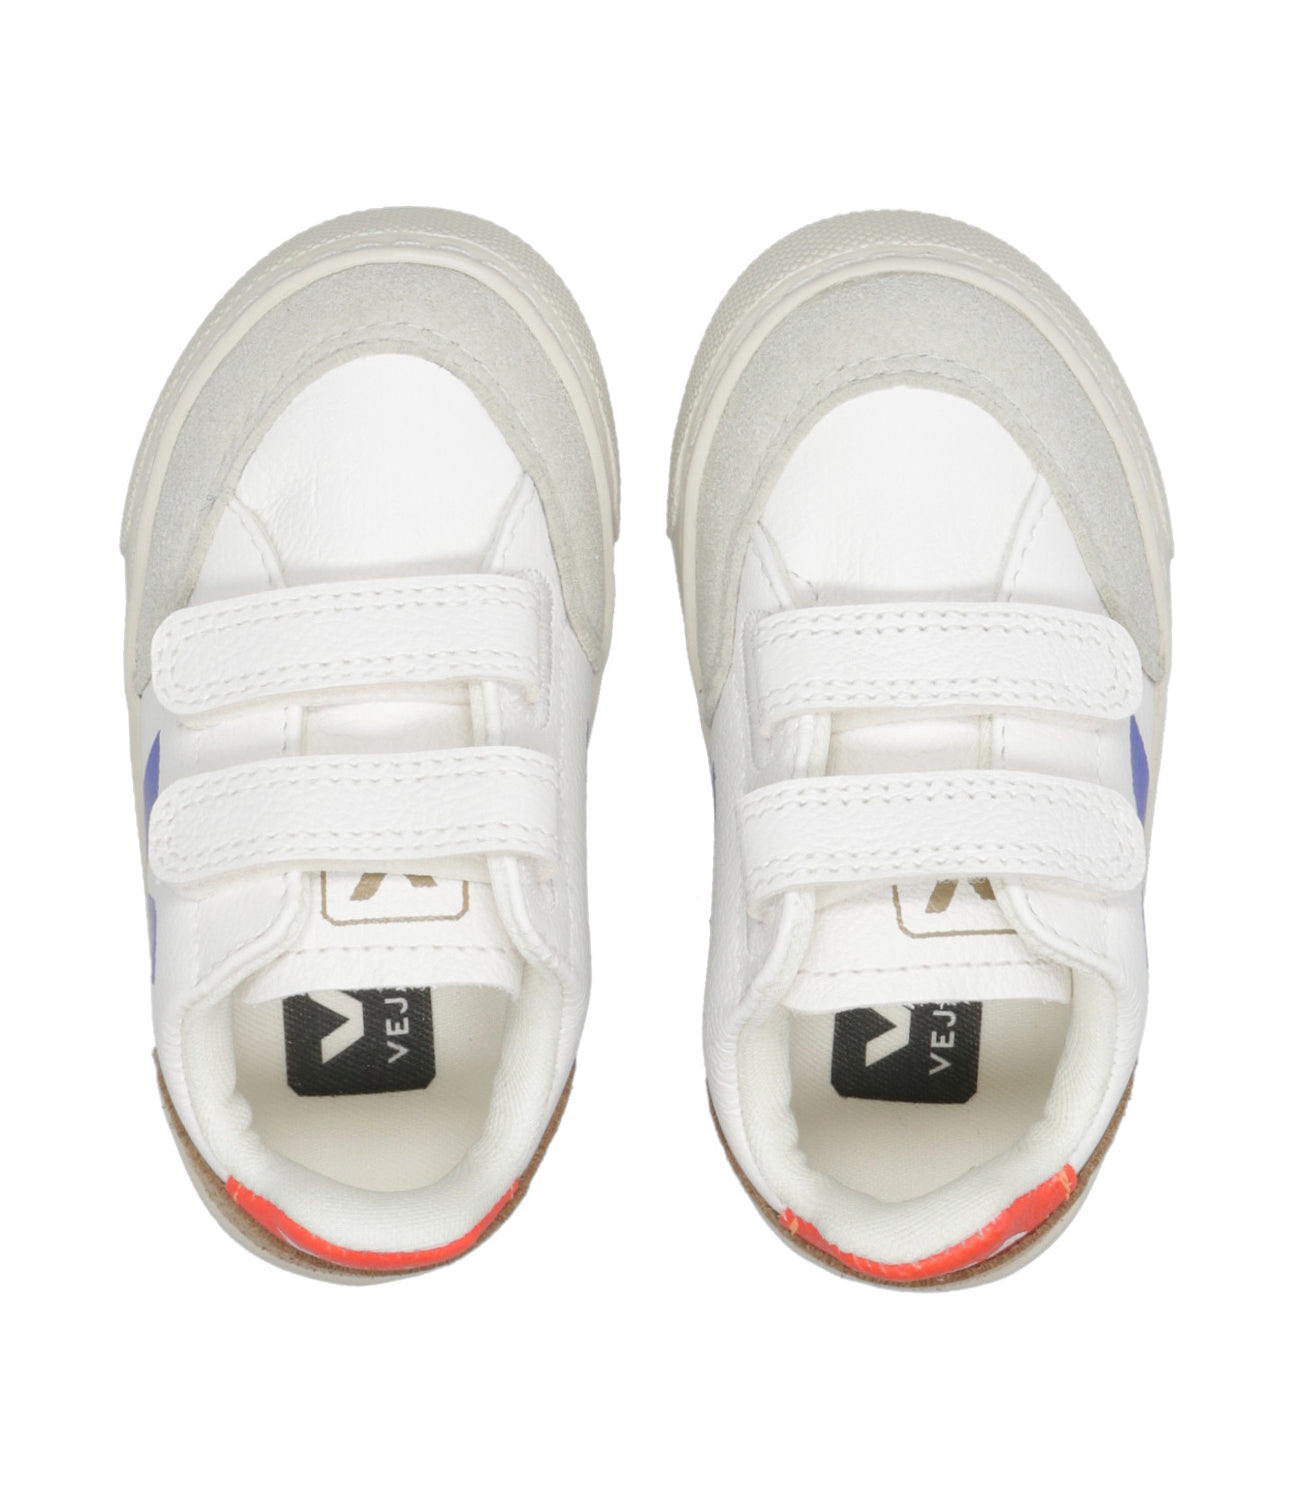 Veja Kids | Sneakers V-12 Bianco+Blu+Rosso